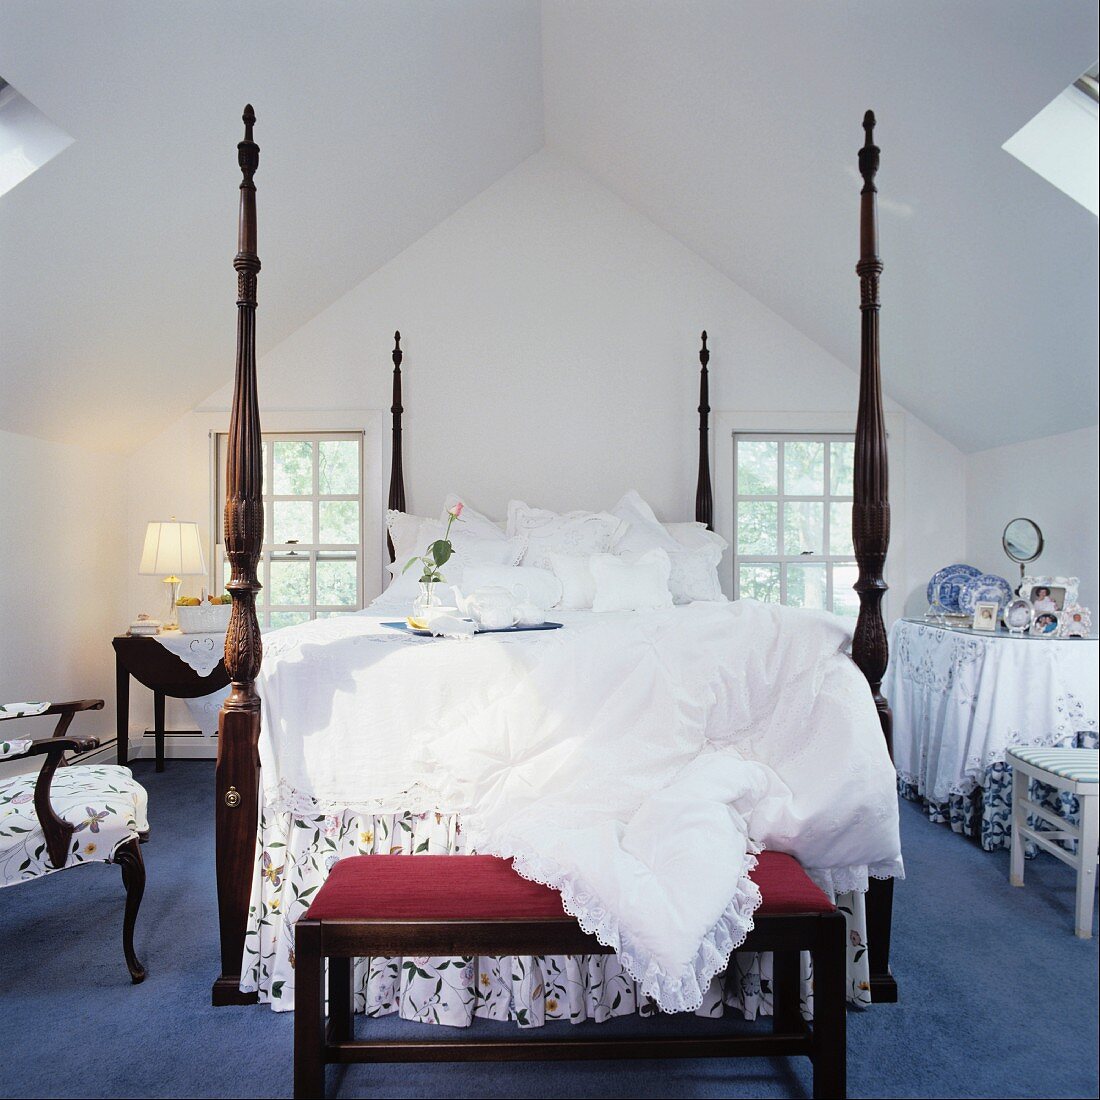 Herrschaftliches Bett mit hohen Bettpfosten und einer gepolsterten Sitzbank unter dem Dach